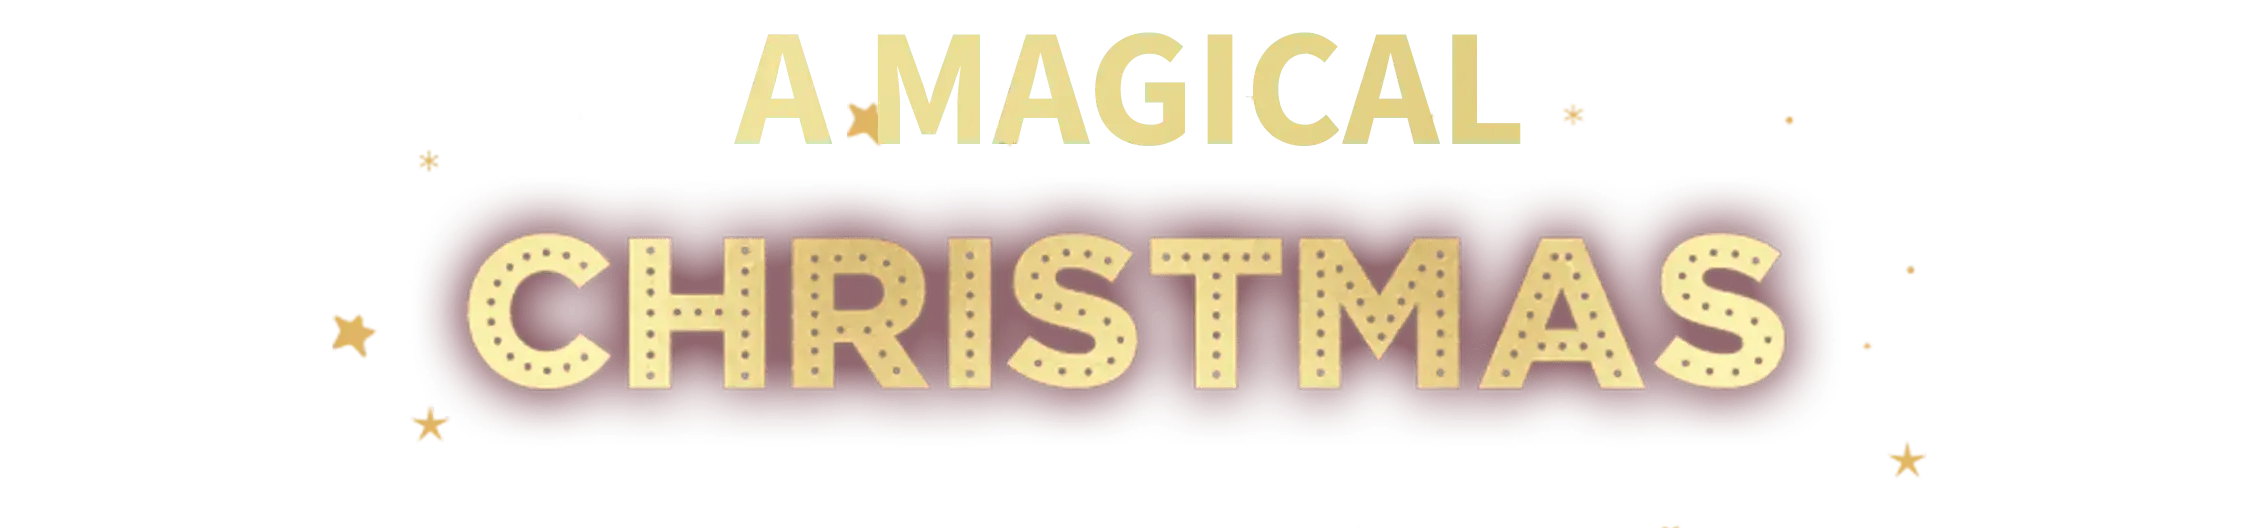 asda-magical-christmas